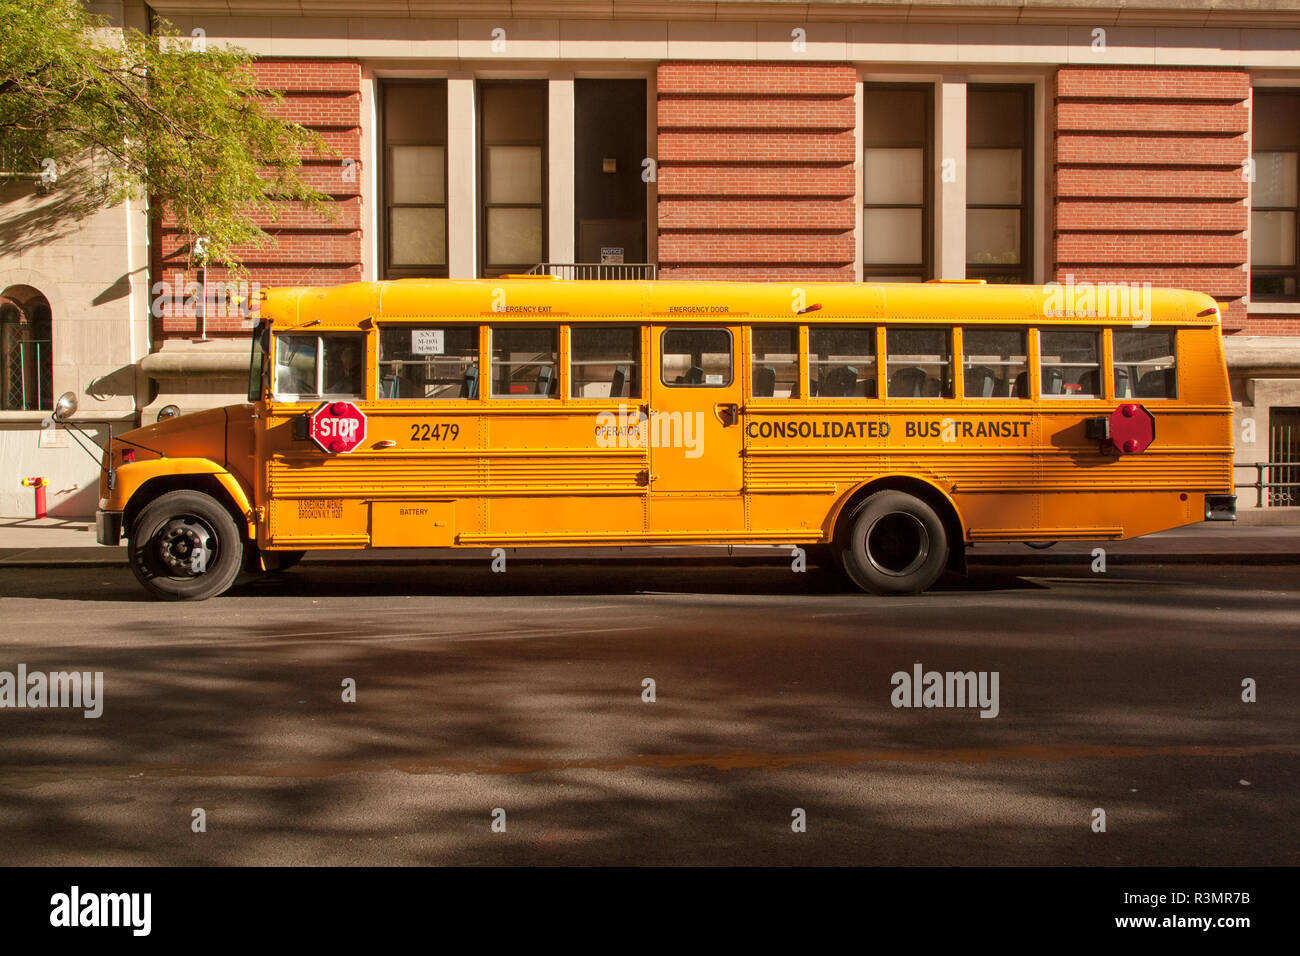 American school bus jaune près de Columbus Circle, New York City, États-Unis d'Amérique. Banque D'Images